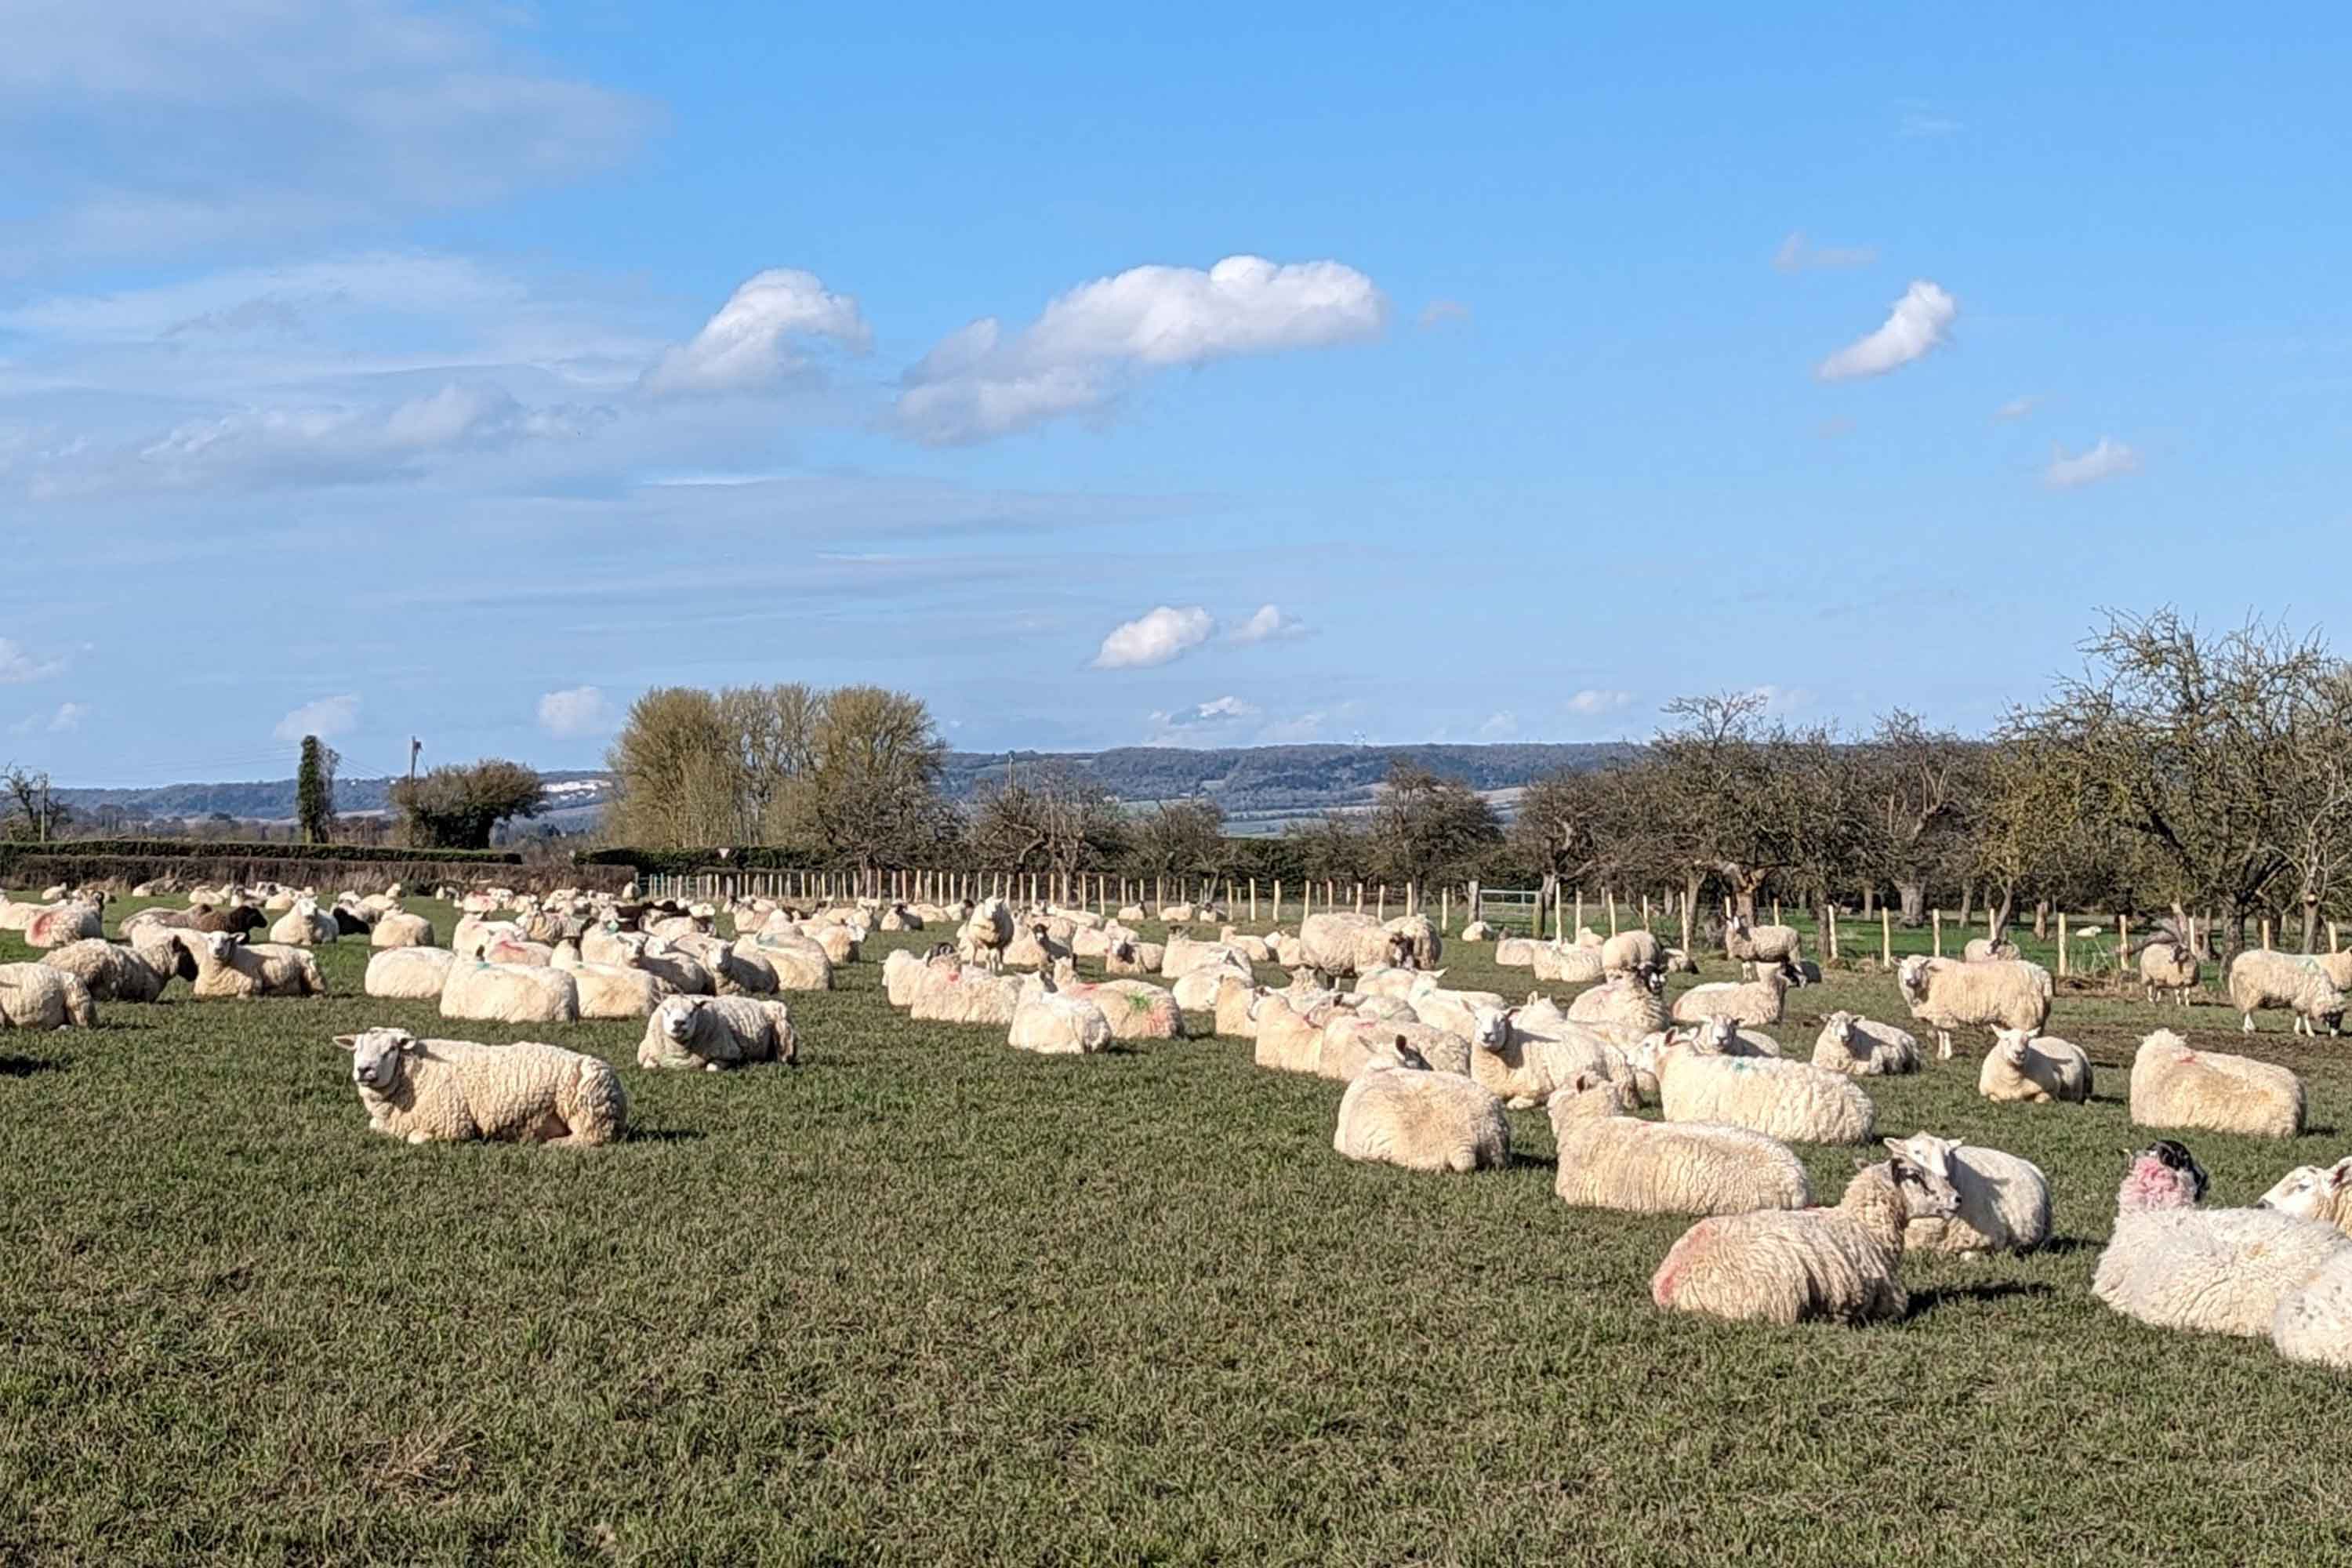 Ruhende Schafe auf einem Feld mit blauem Himmel und flockigen Wolken darüber